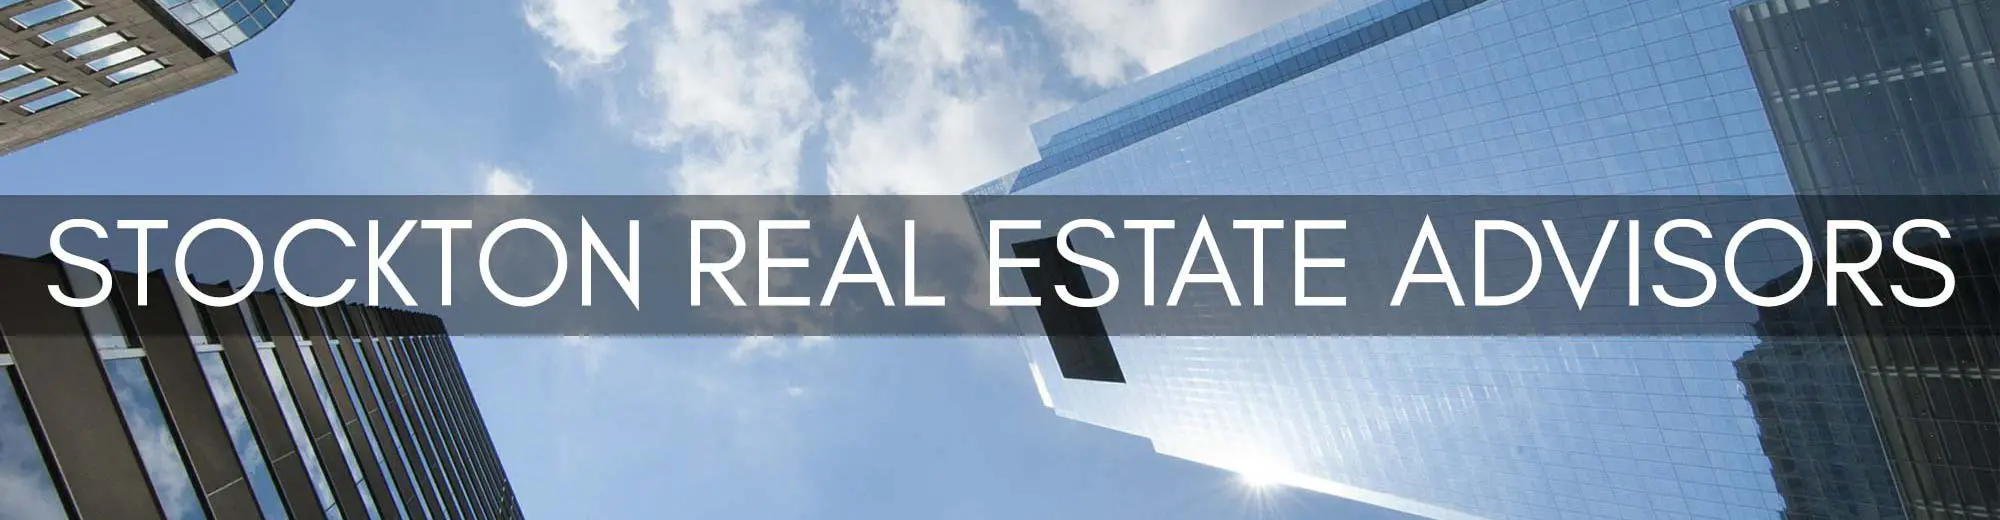 Stockton Real Estate Advisors - skyscrapers